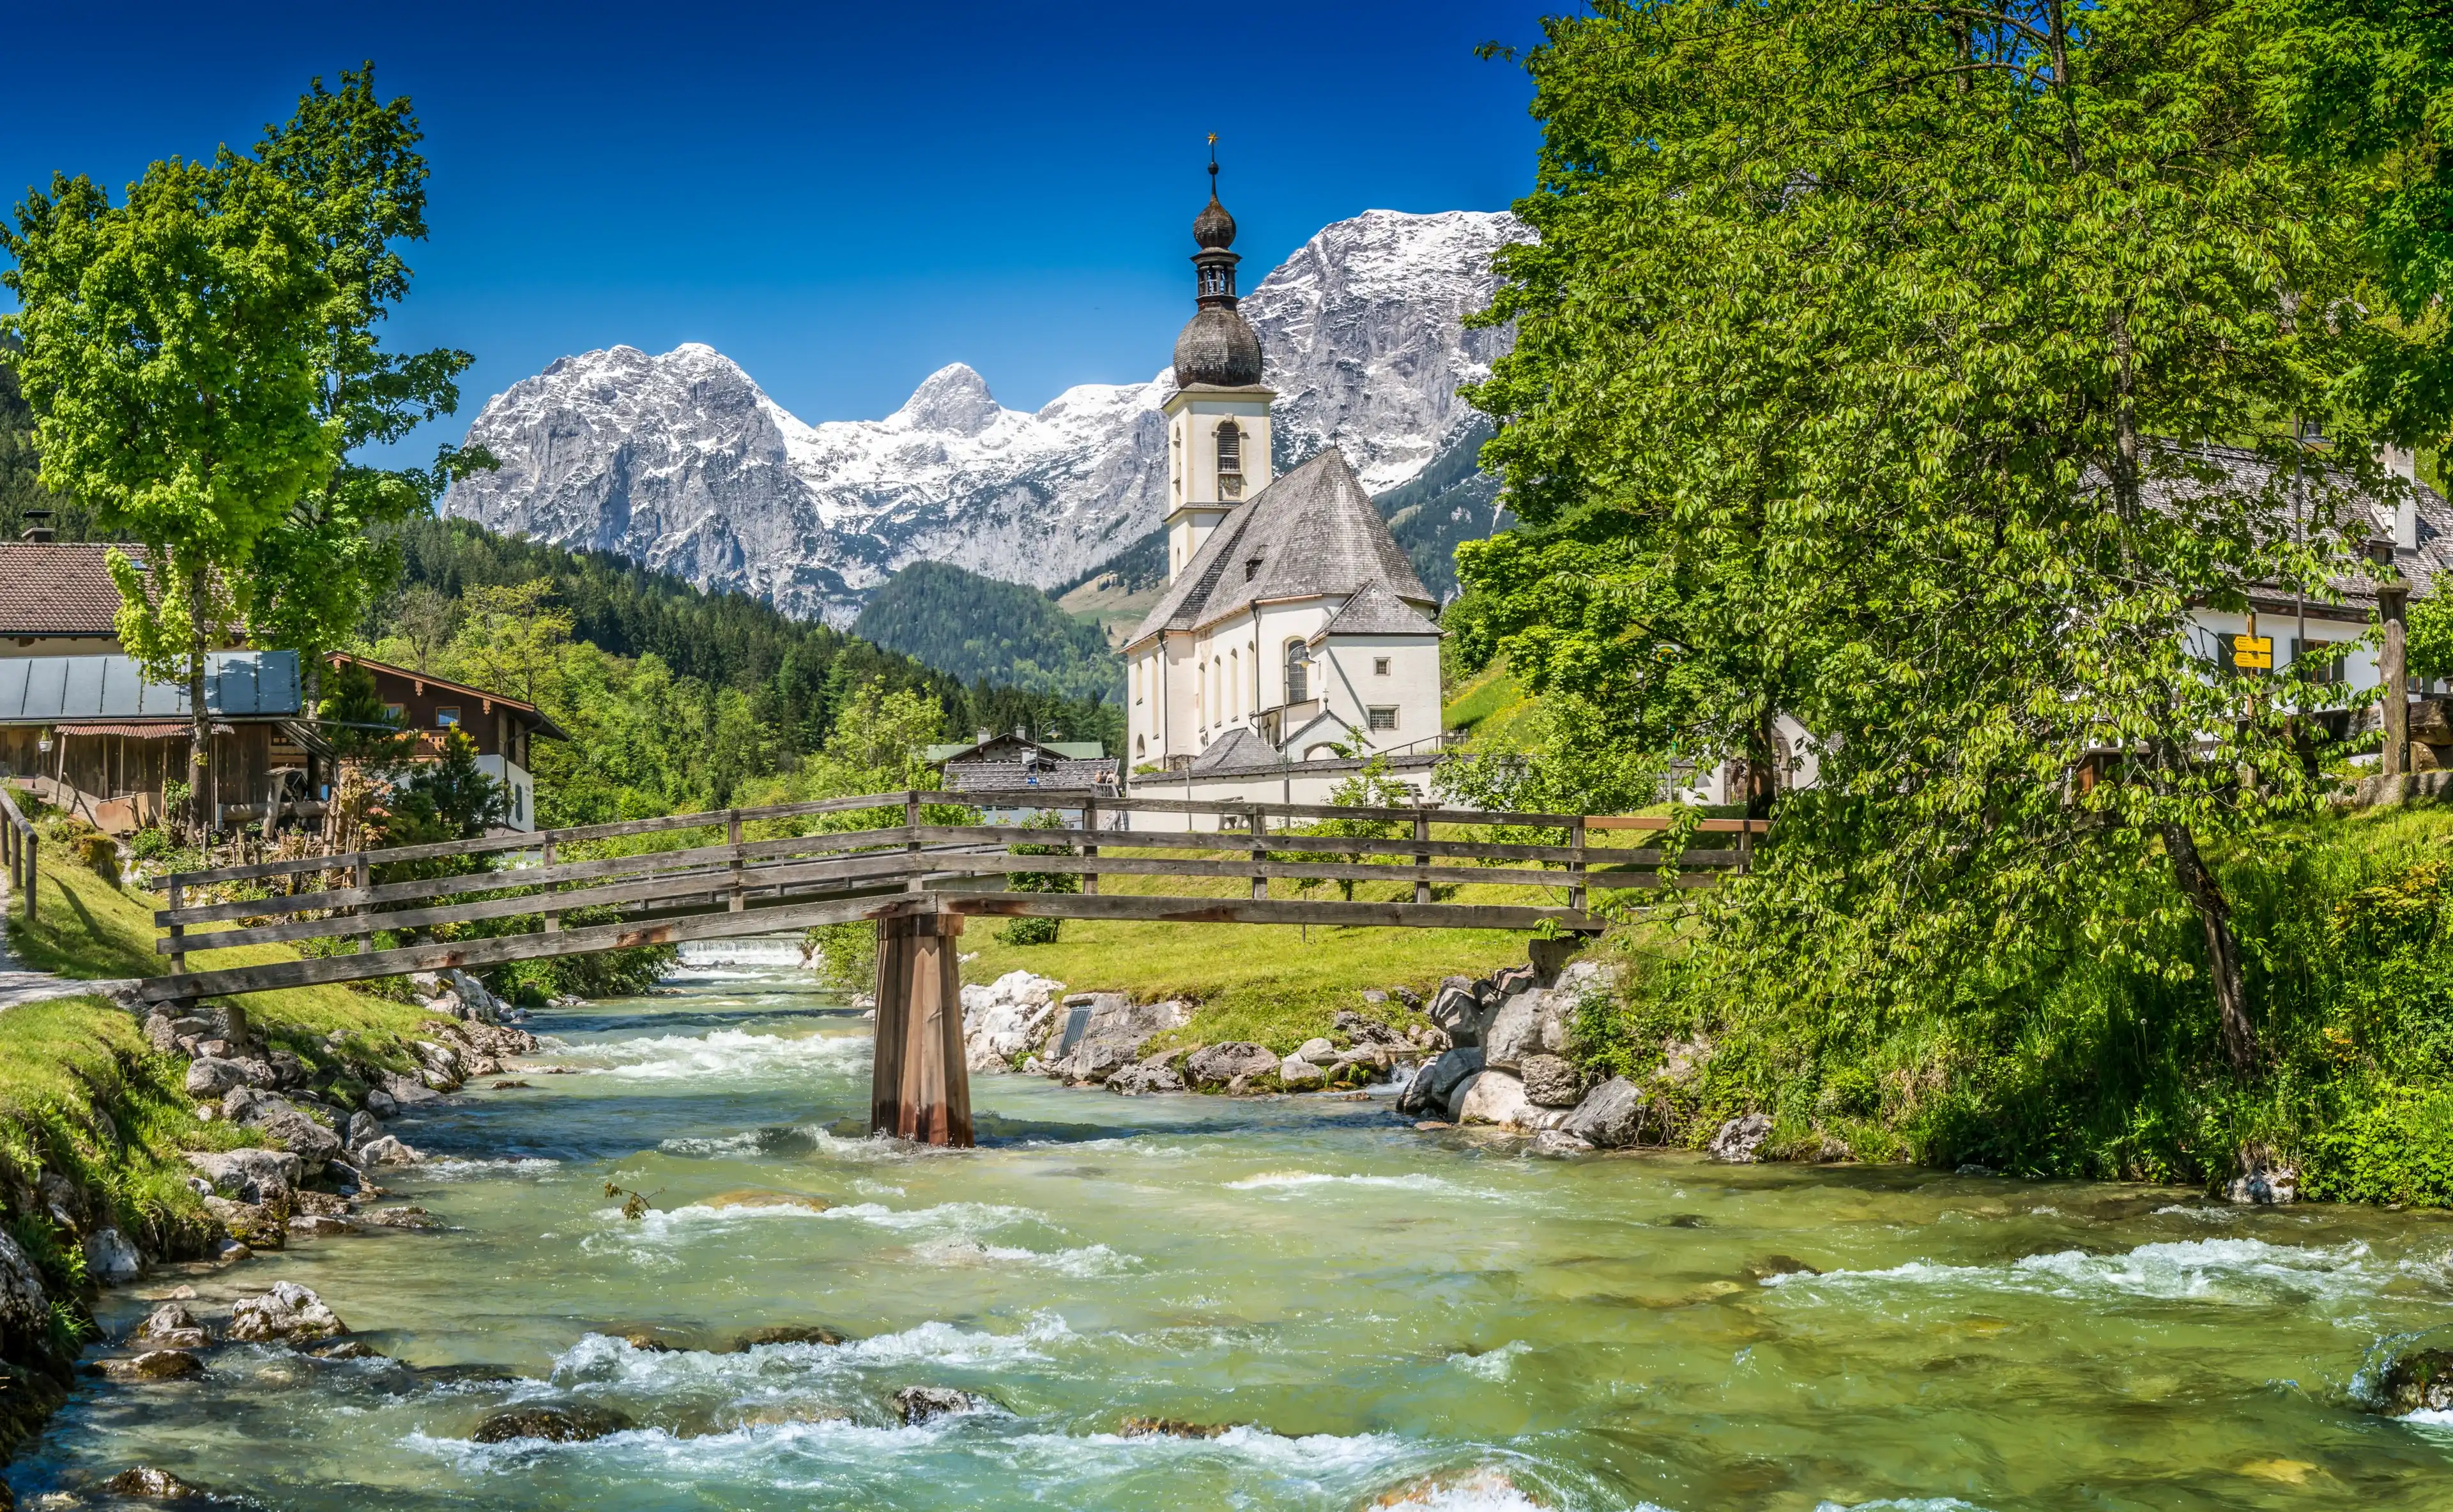  Best Berchtesgaden hotels. Cheap hotels in Berchtesgaden, Germany